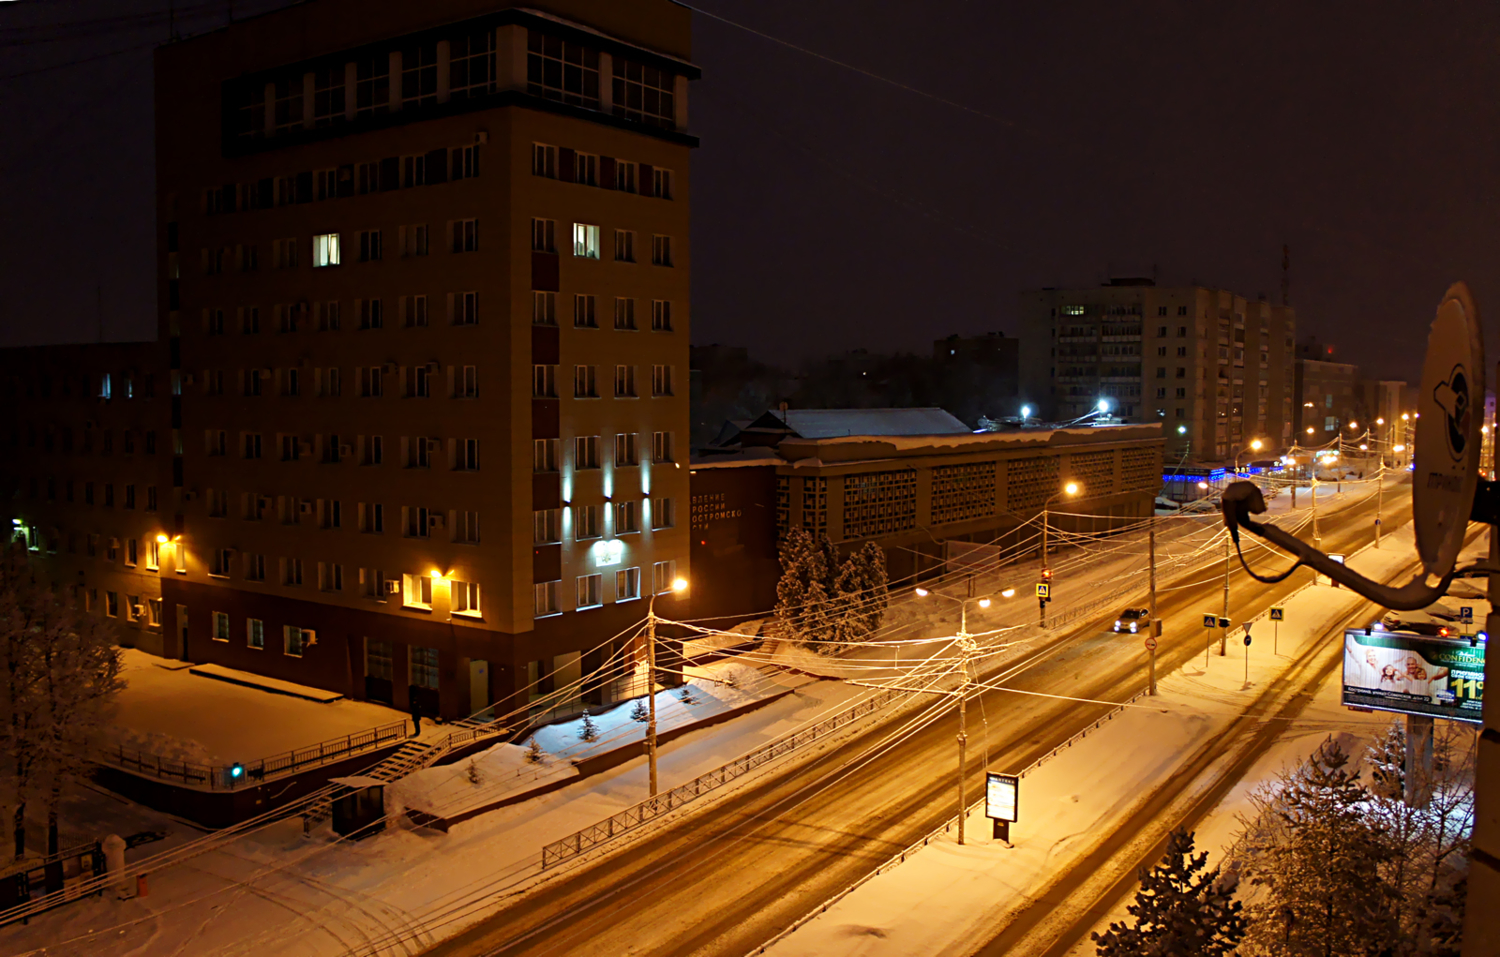 Улица из моего окна (зима)